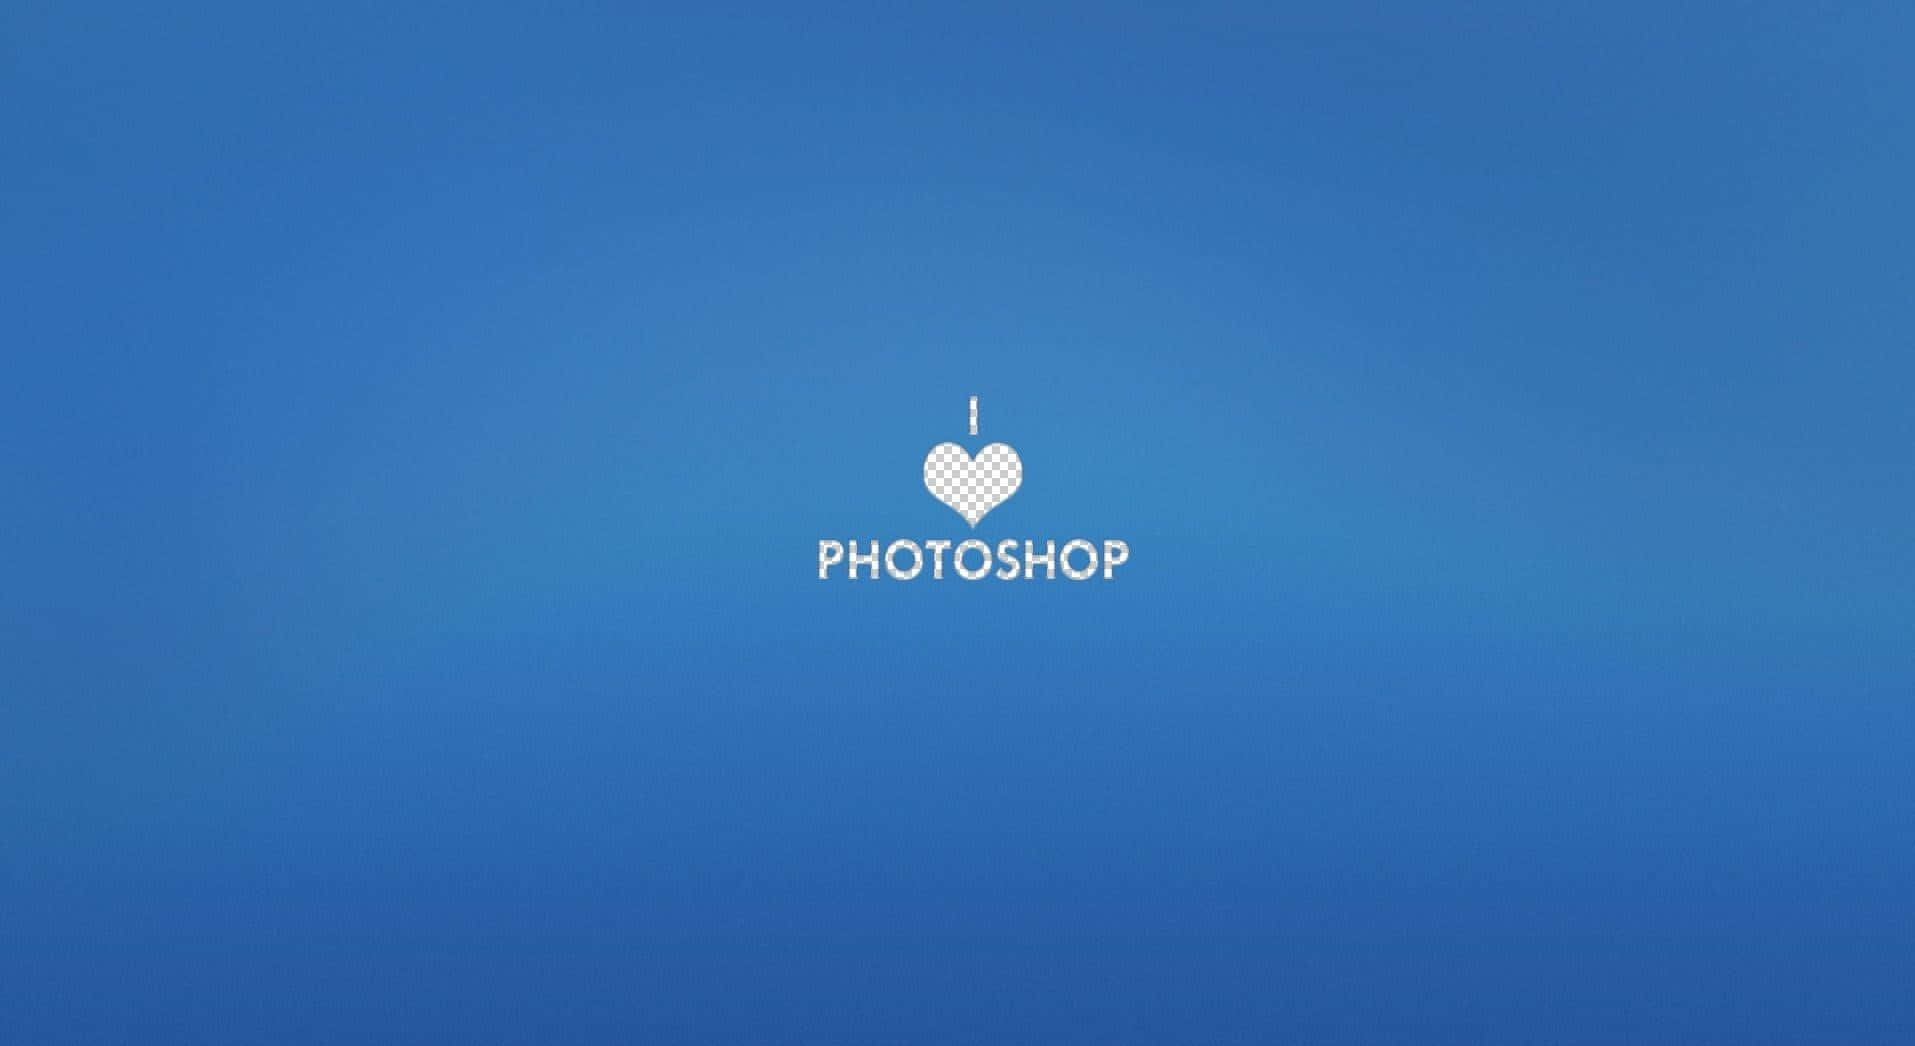 Photoshopjag Älskar Logotypen. Wallpaper